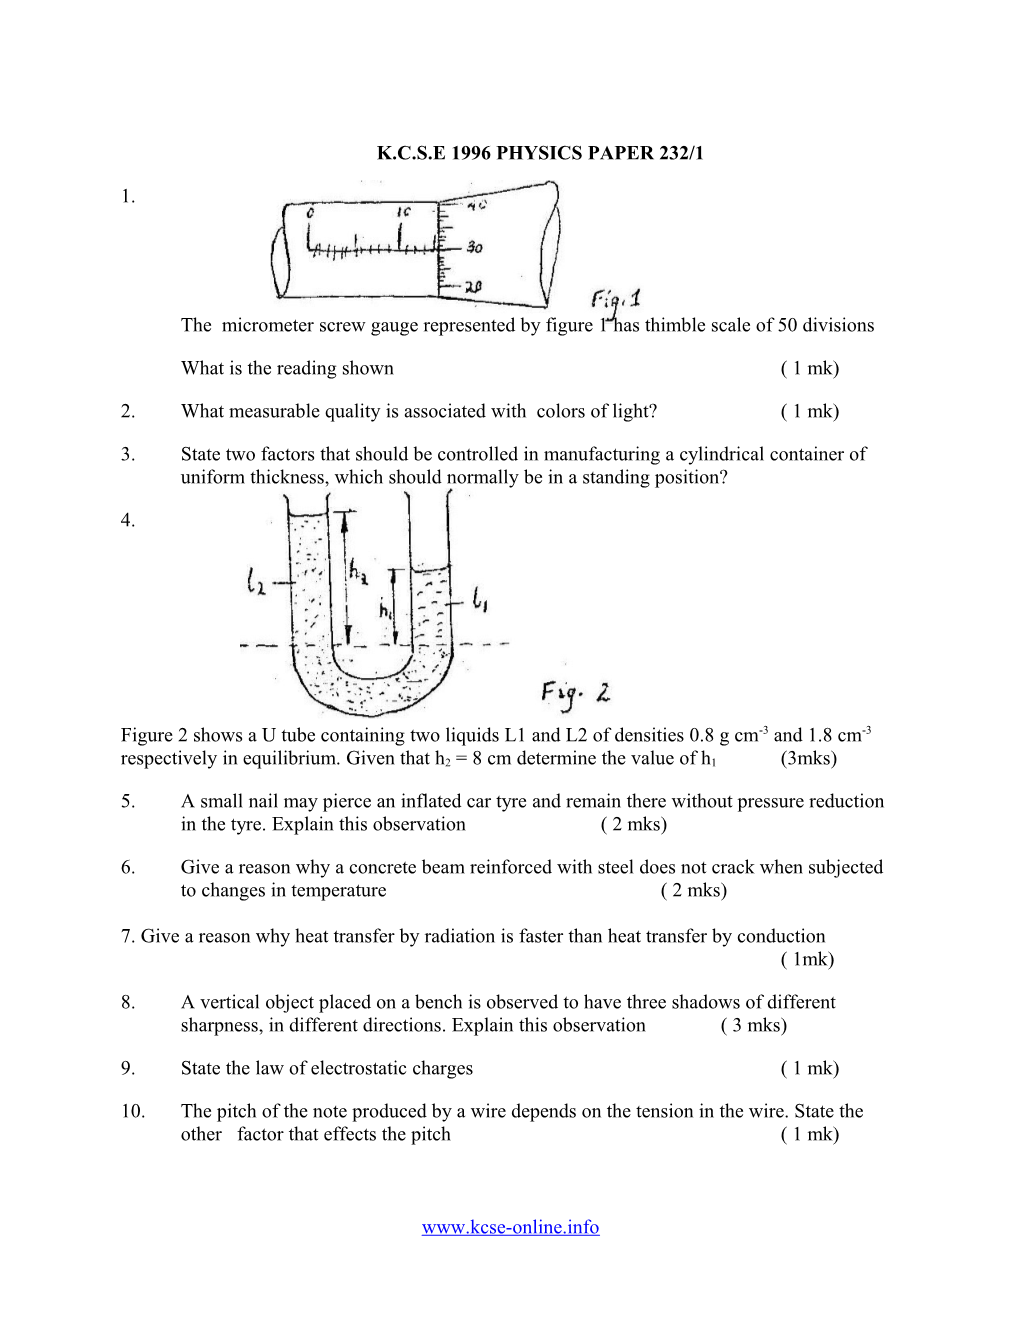 K.C.S.E 1996 Physics Paper 232/1